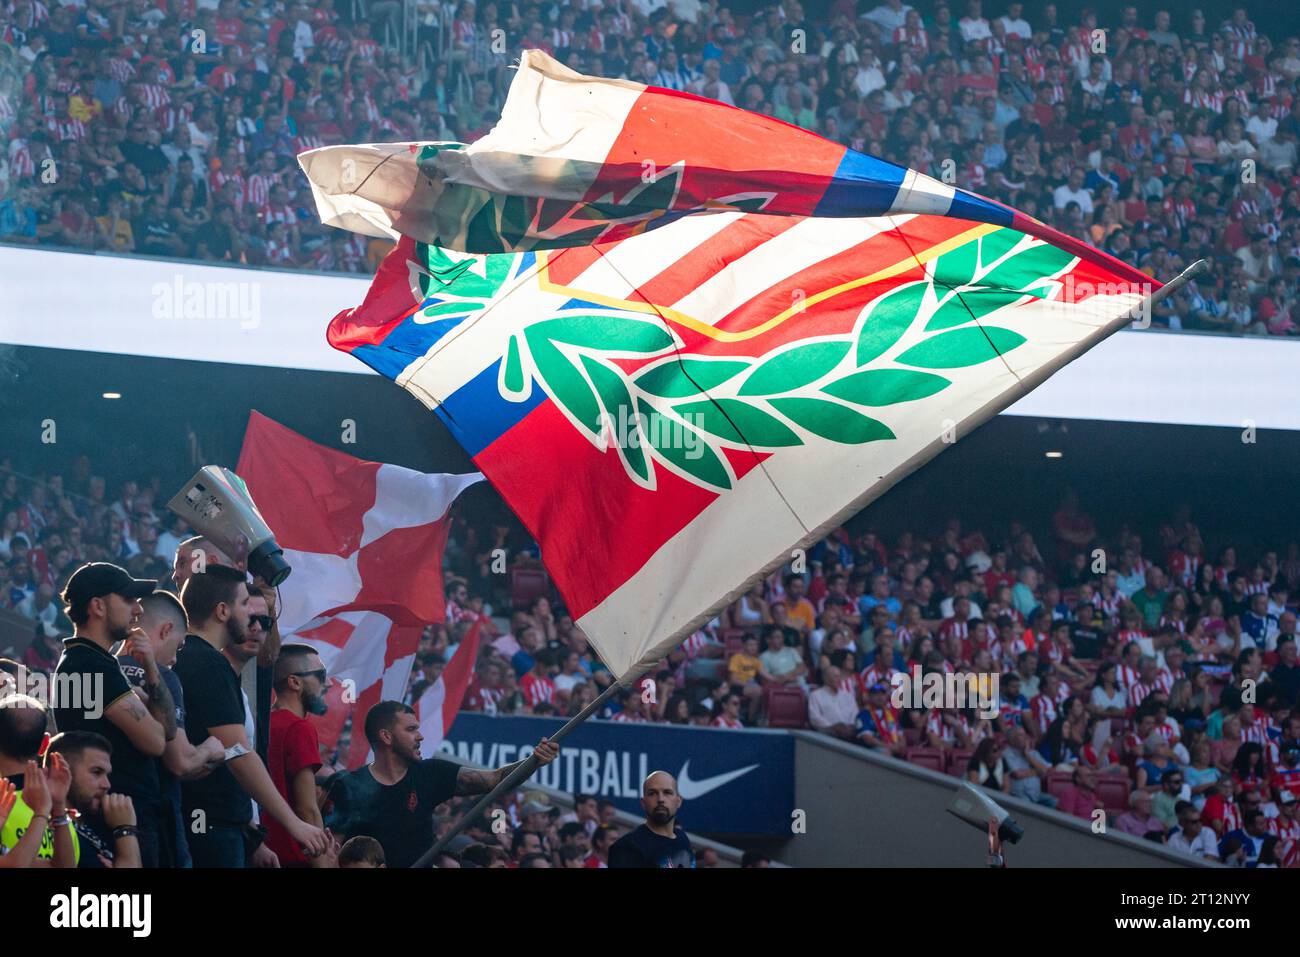 Frente Atlético on X: Desde el principio de una era, Madrid tiene solo una  bandera. #ALaCuadraPorLaCastellana  / X